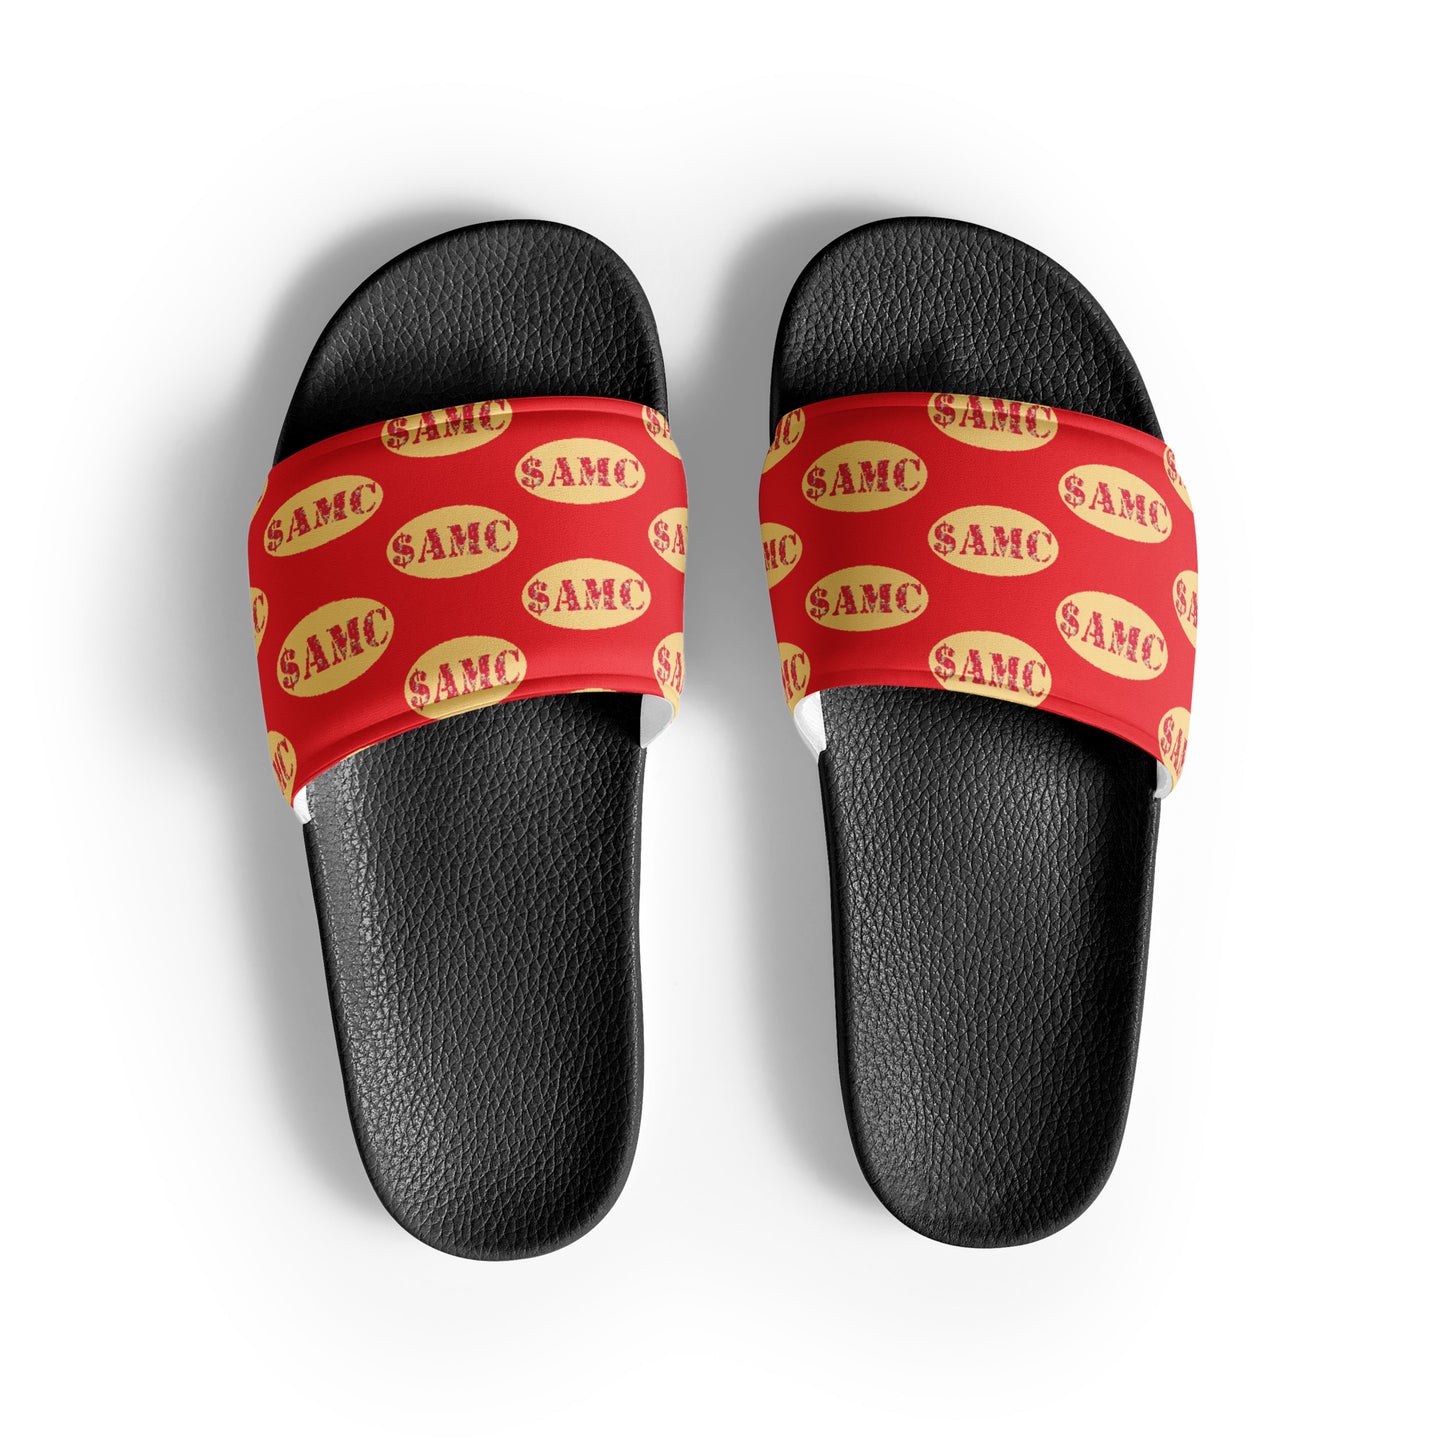 $AMC Men’s slides beach pool shoes